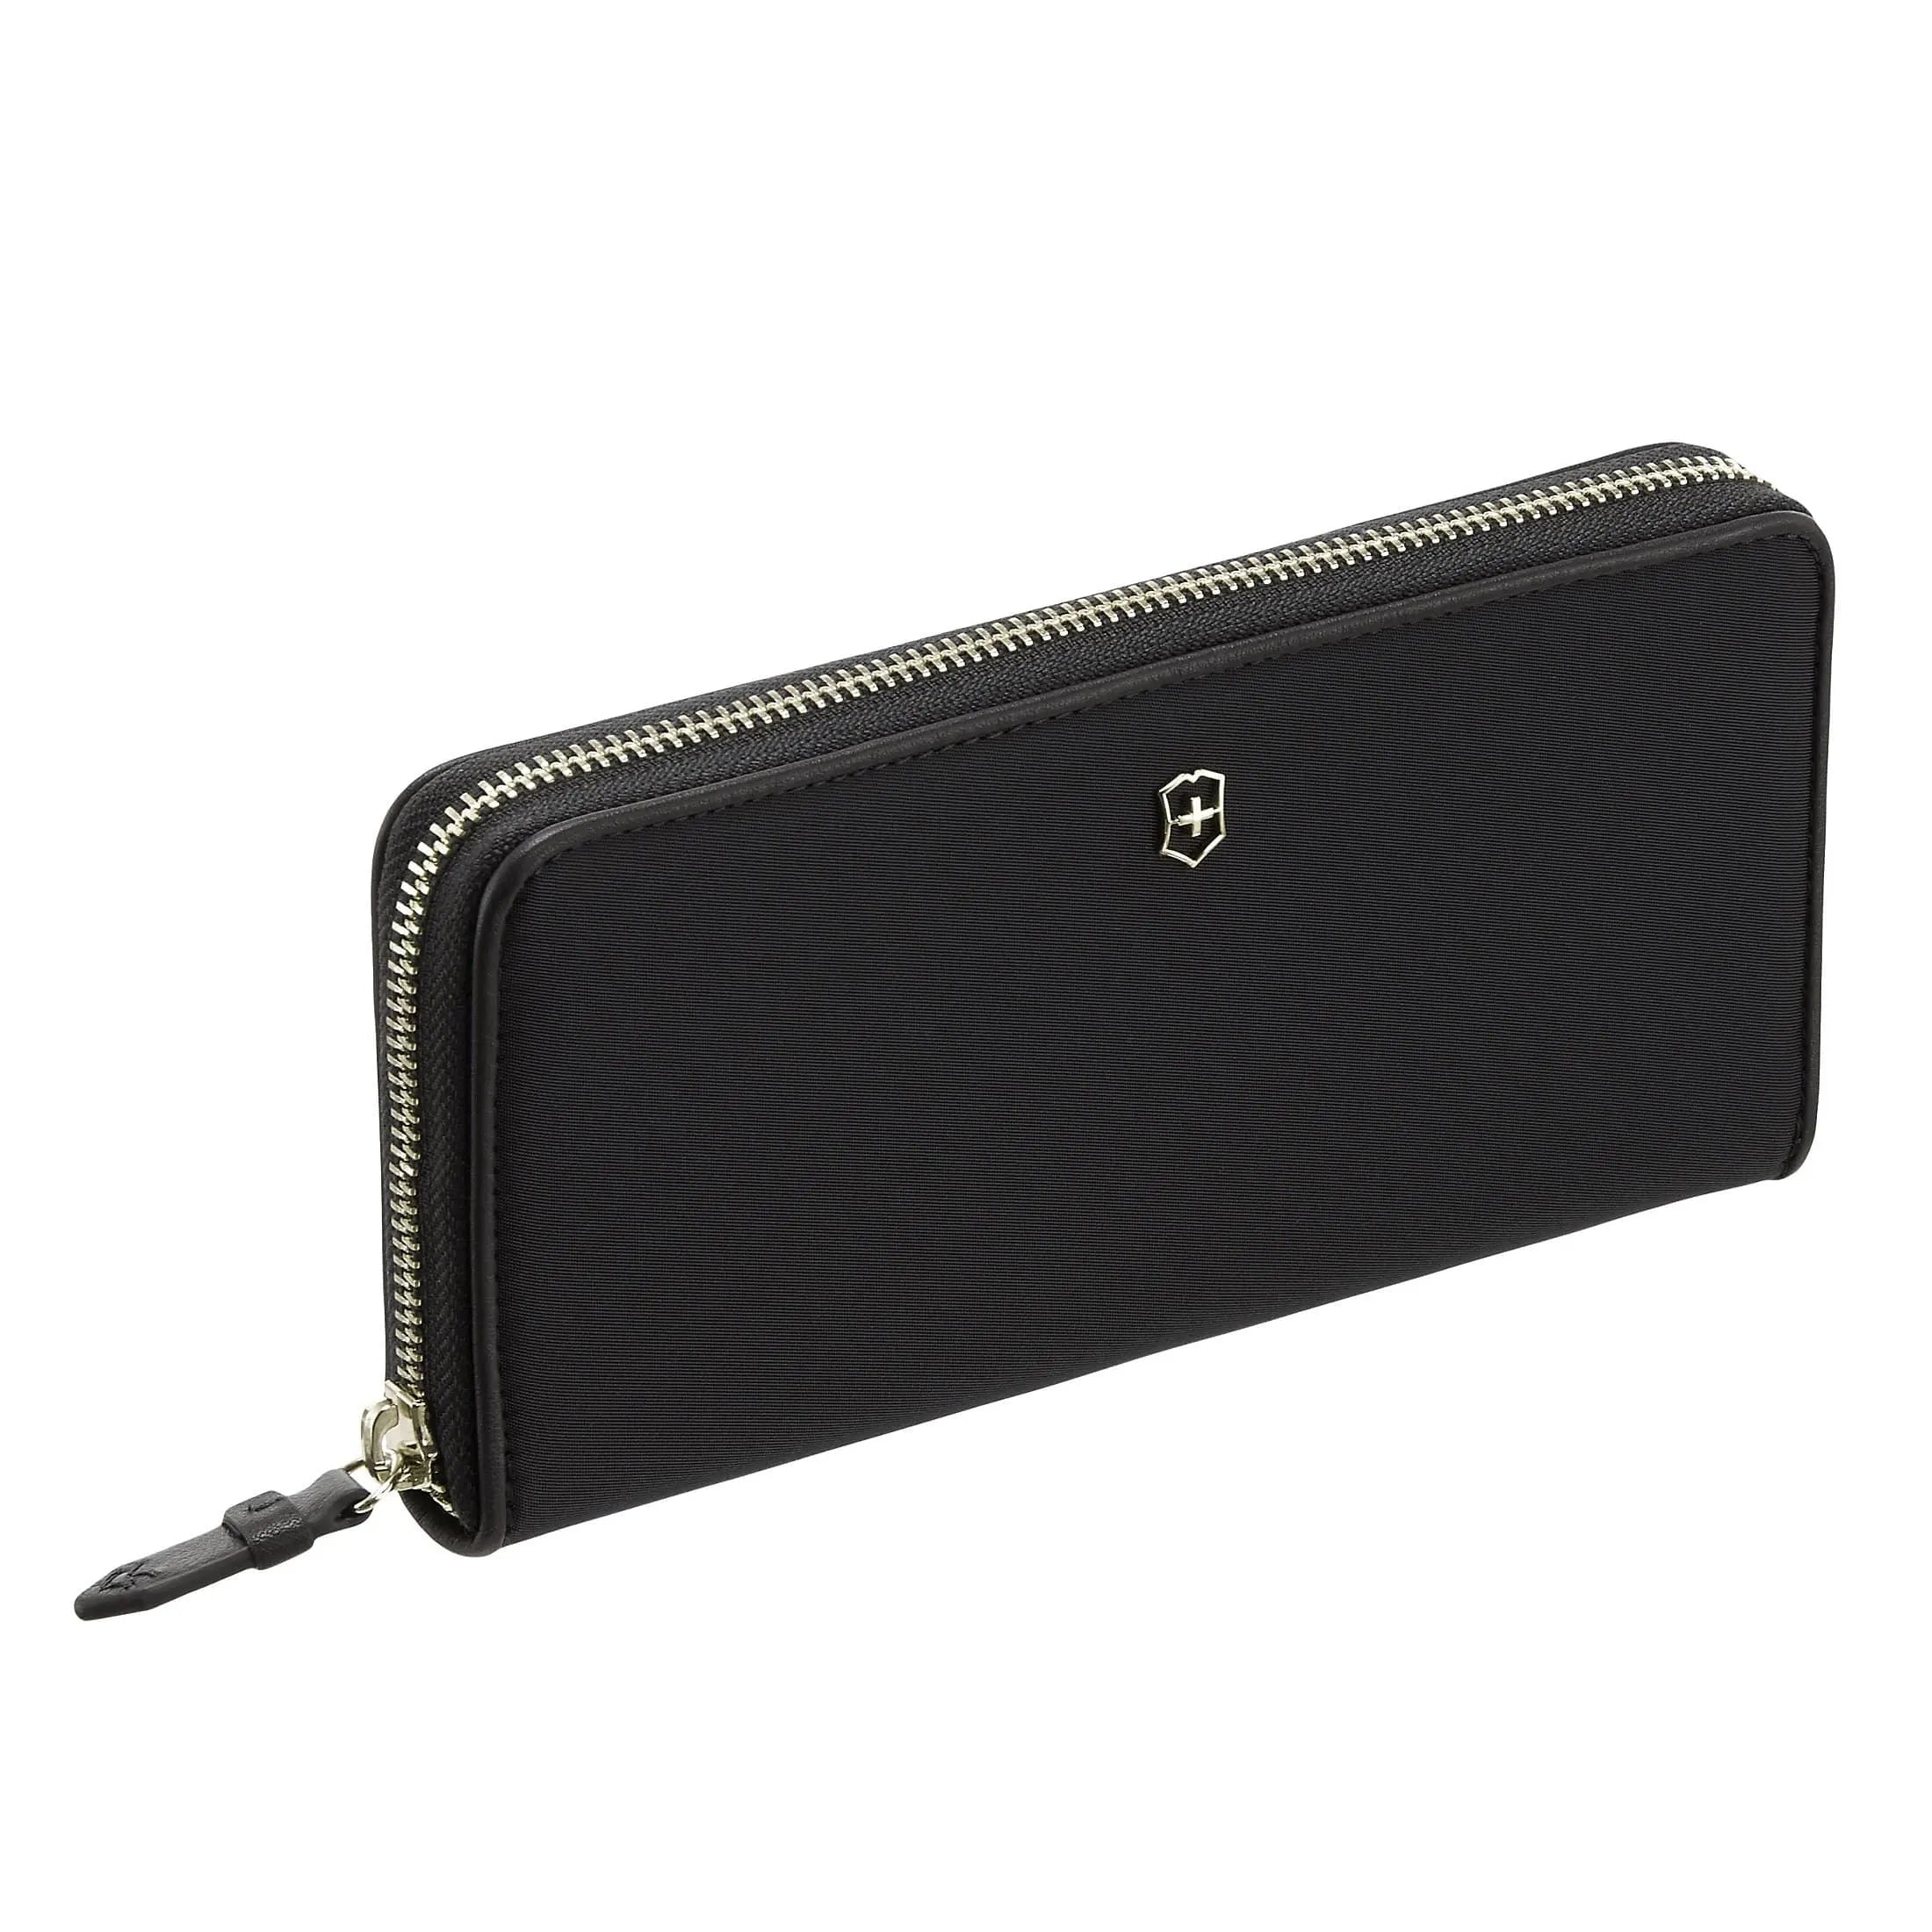 Victorinox Victoria 2.0 Continental Wallet purse 19 cm - black